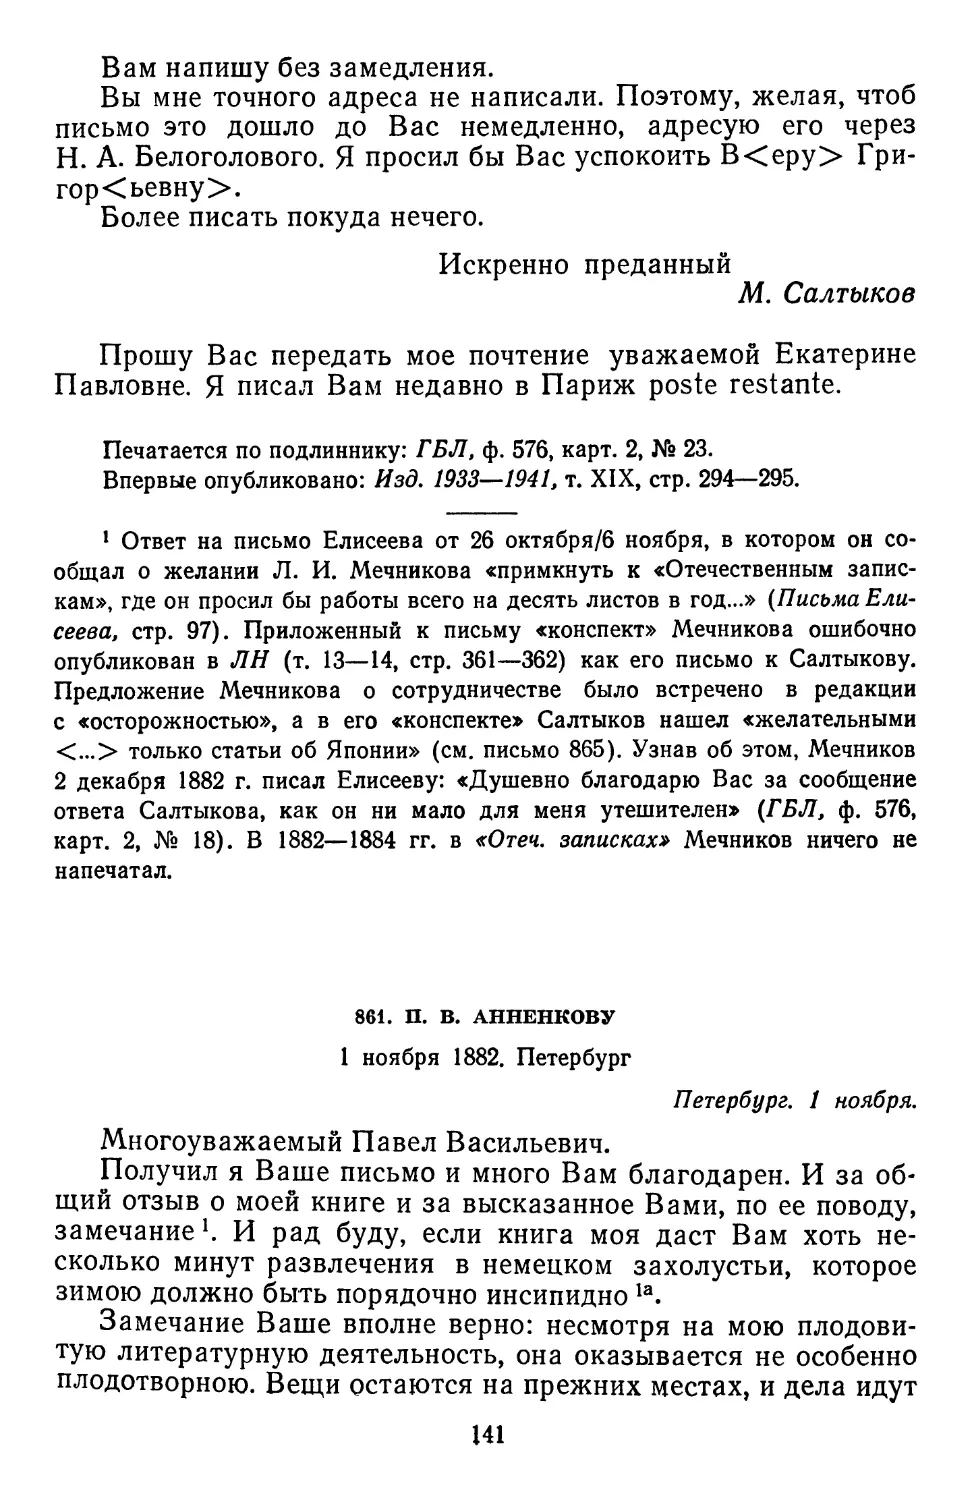 861.П. В. Анненкову. 1 ноября 1882.Петербург...